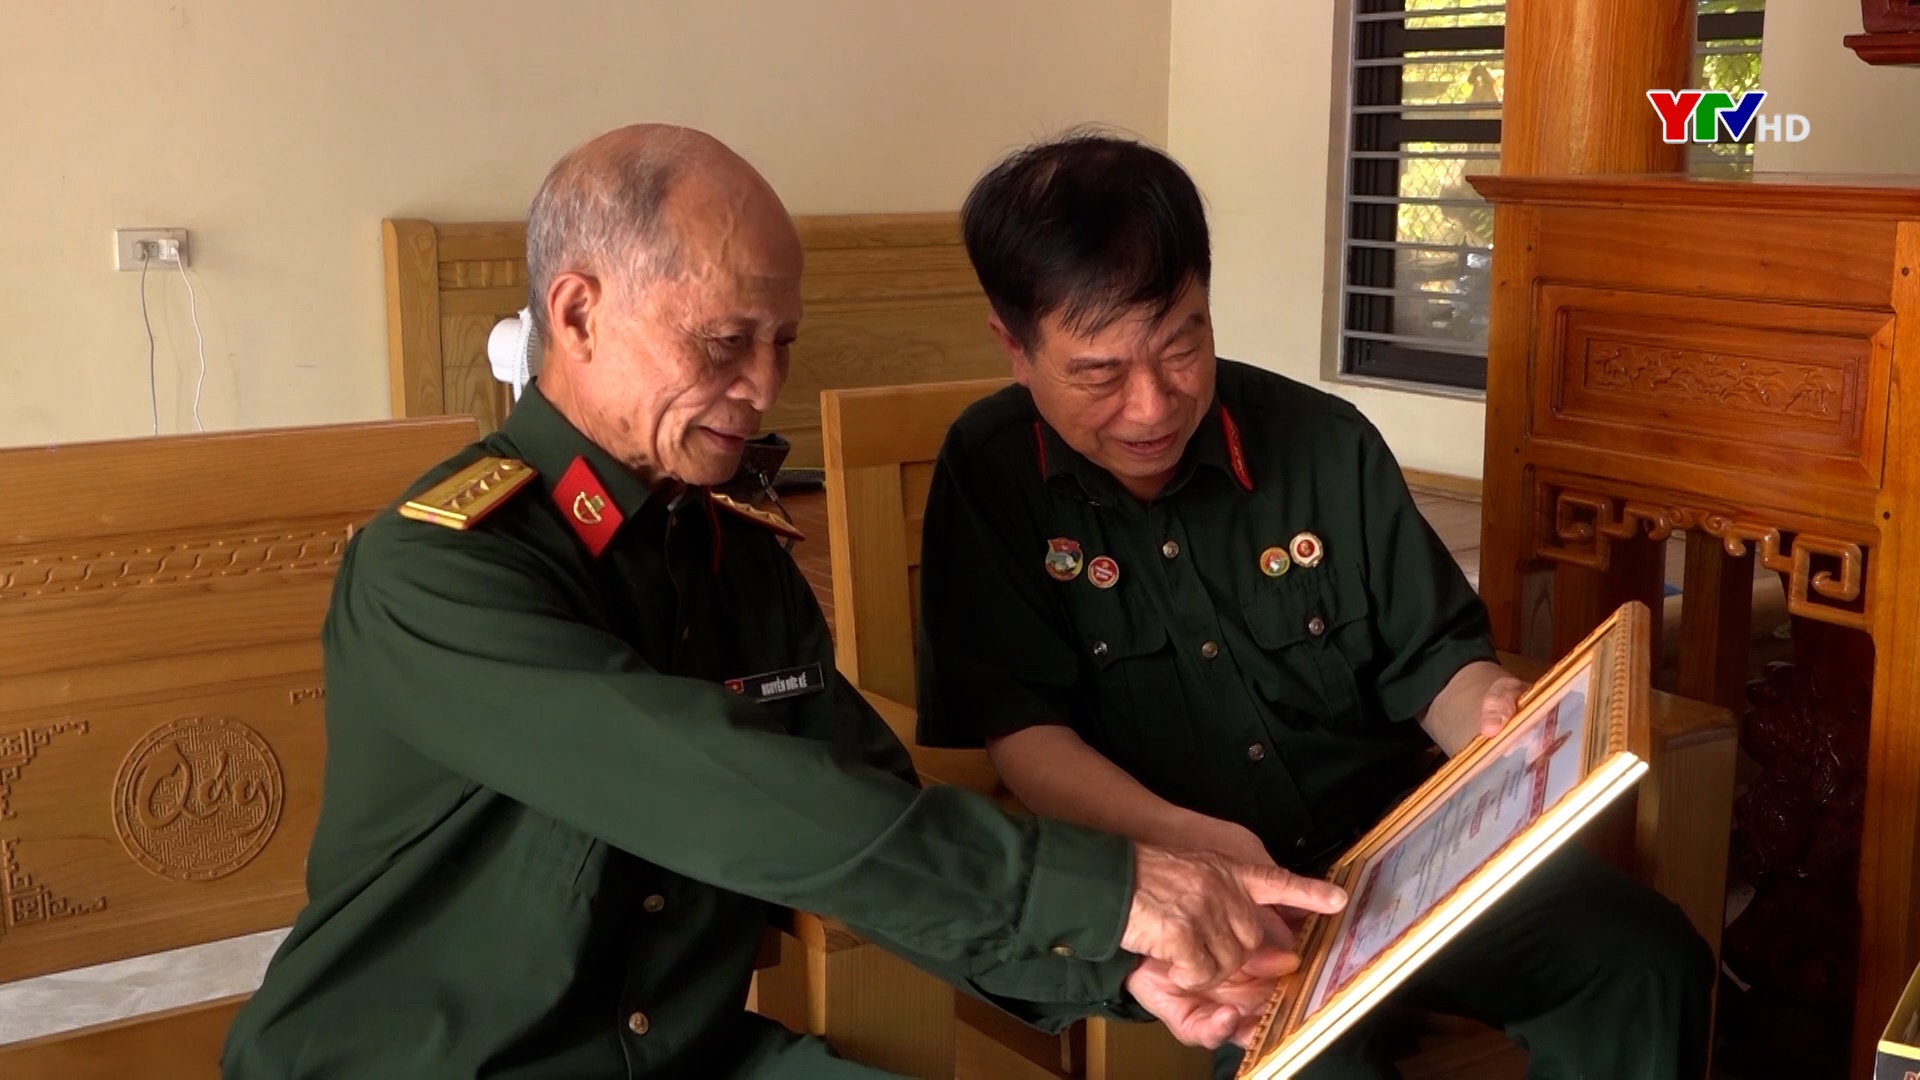 49 năm Giải phóng miền Nam - Ký ức vẹn nguyên của người lính cụ Hồ